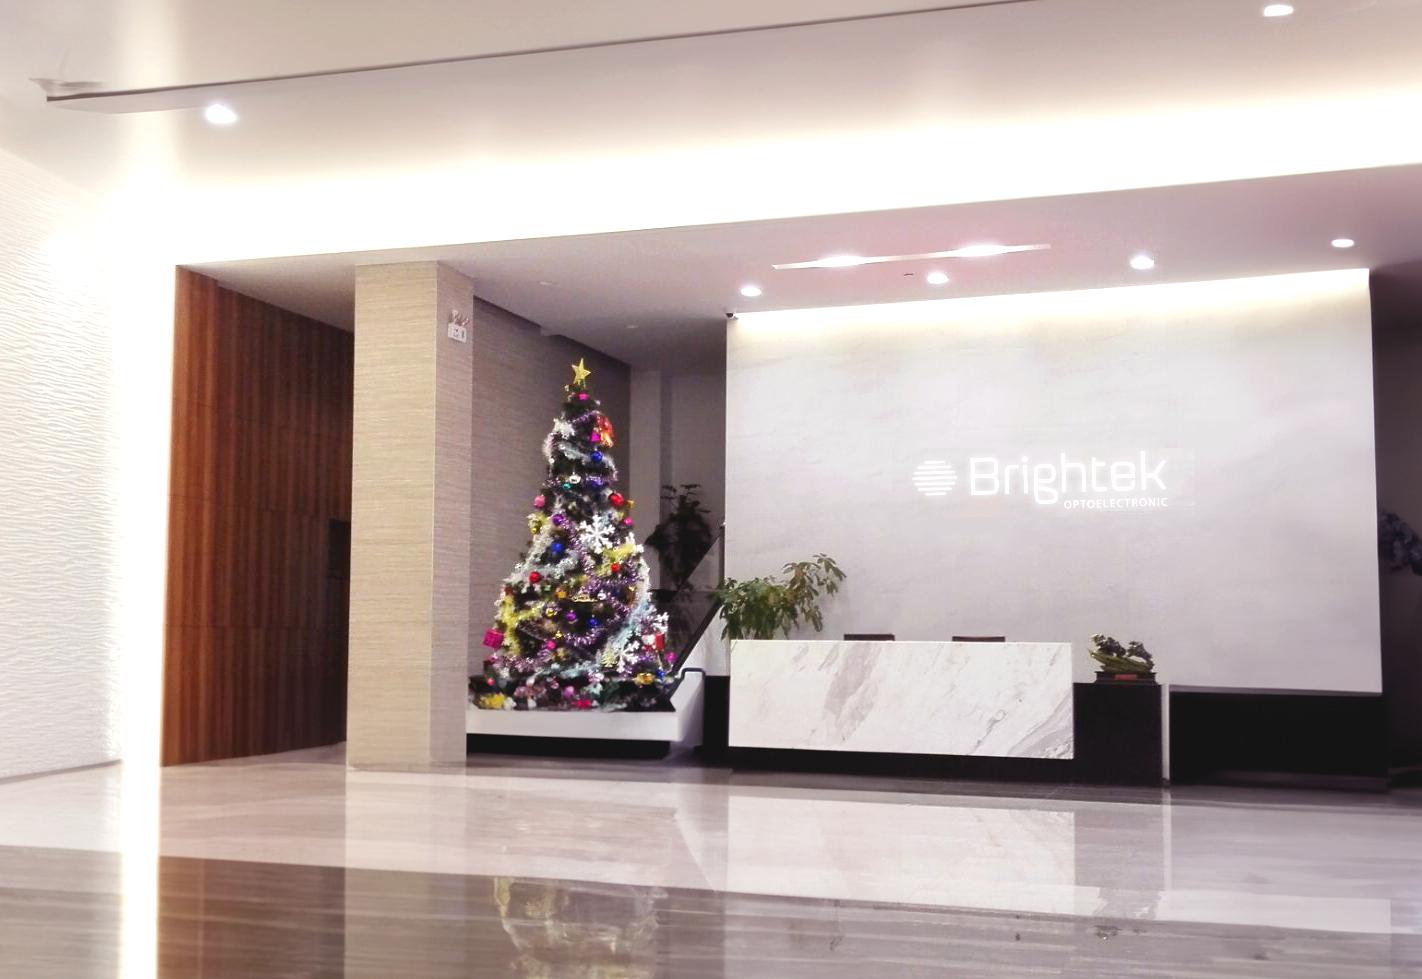 Brightek Optoelectronics Co., LTD. (Shenzhen) Established